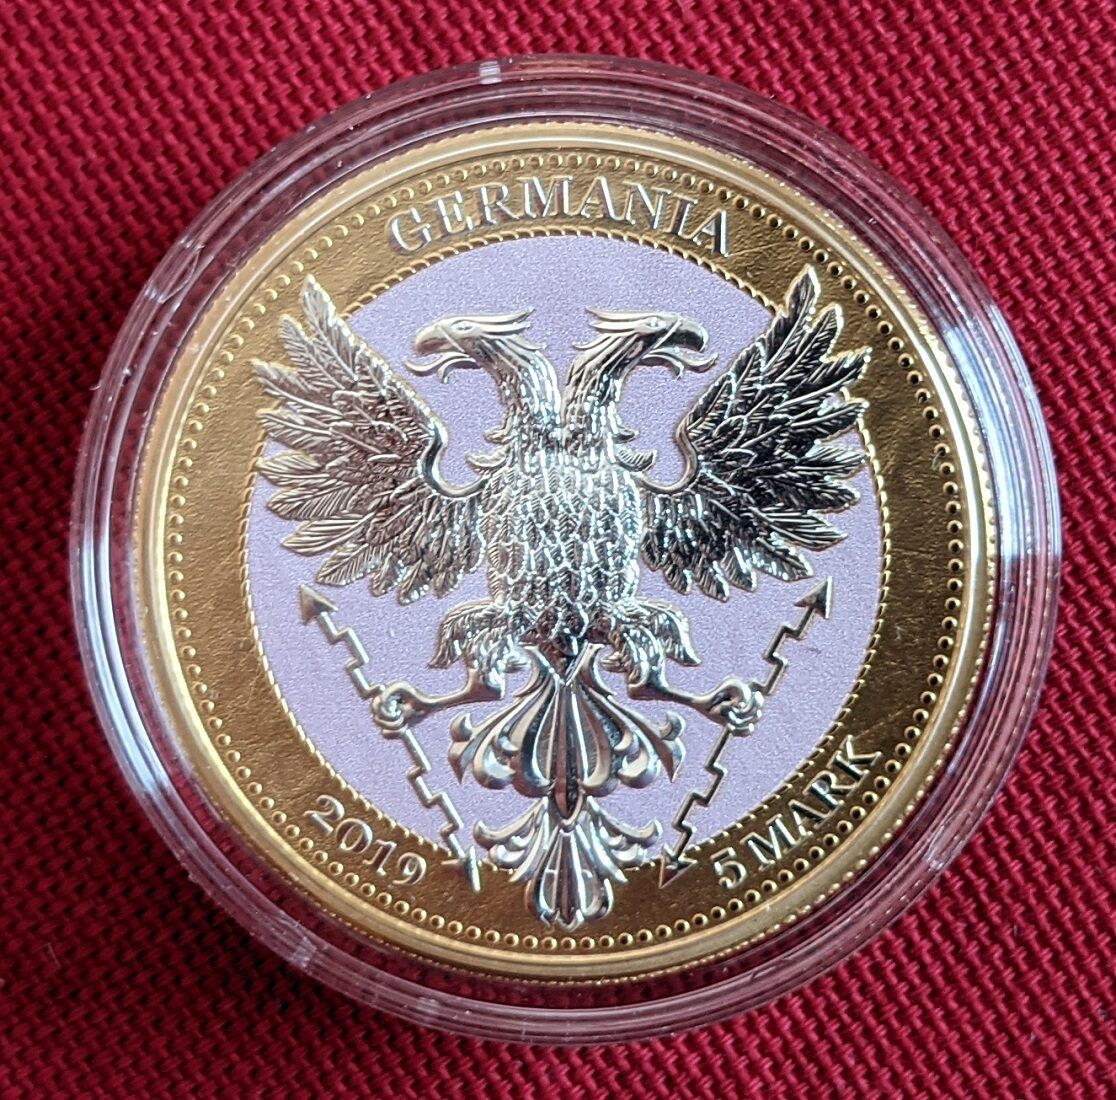 Deutschland 5 Mark - 1 Unze Silber 2019 Germania Mint - Mythical